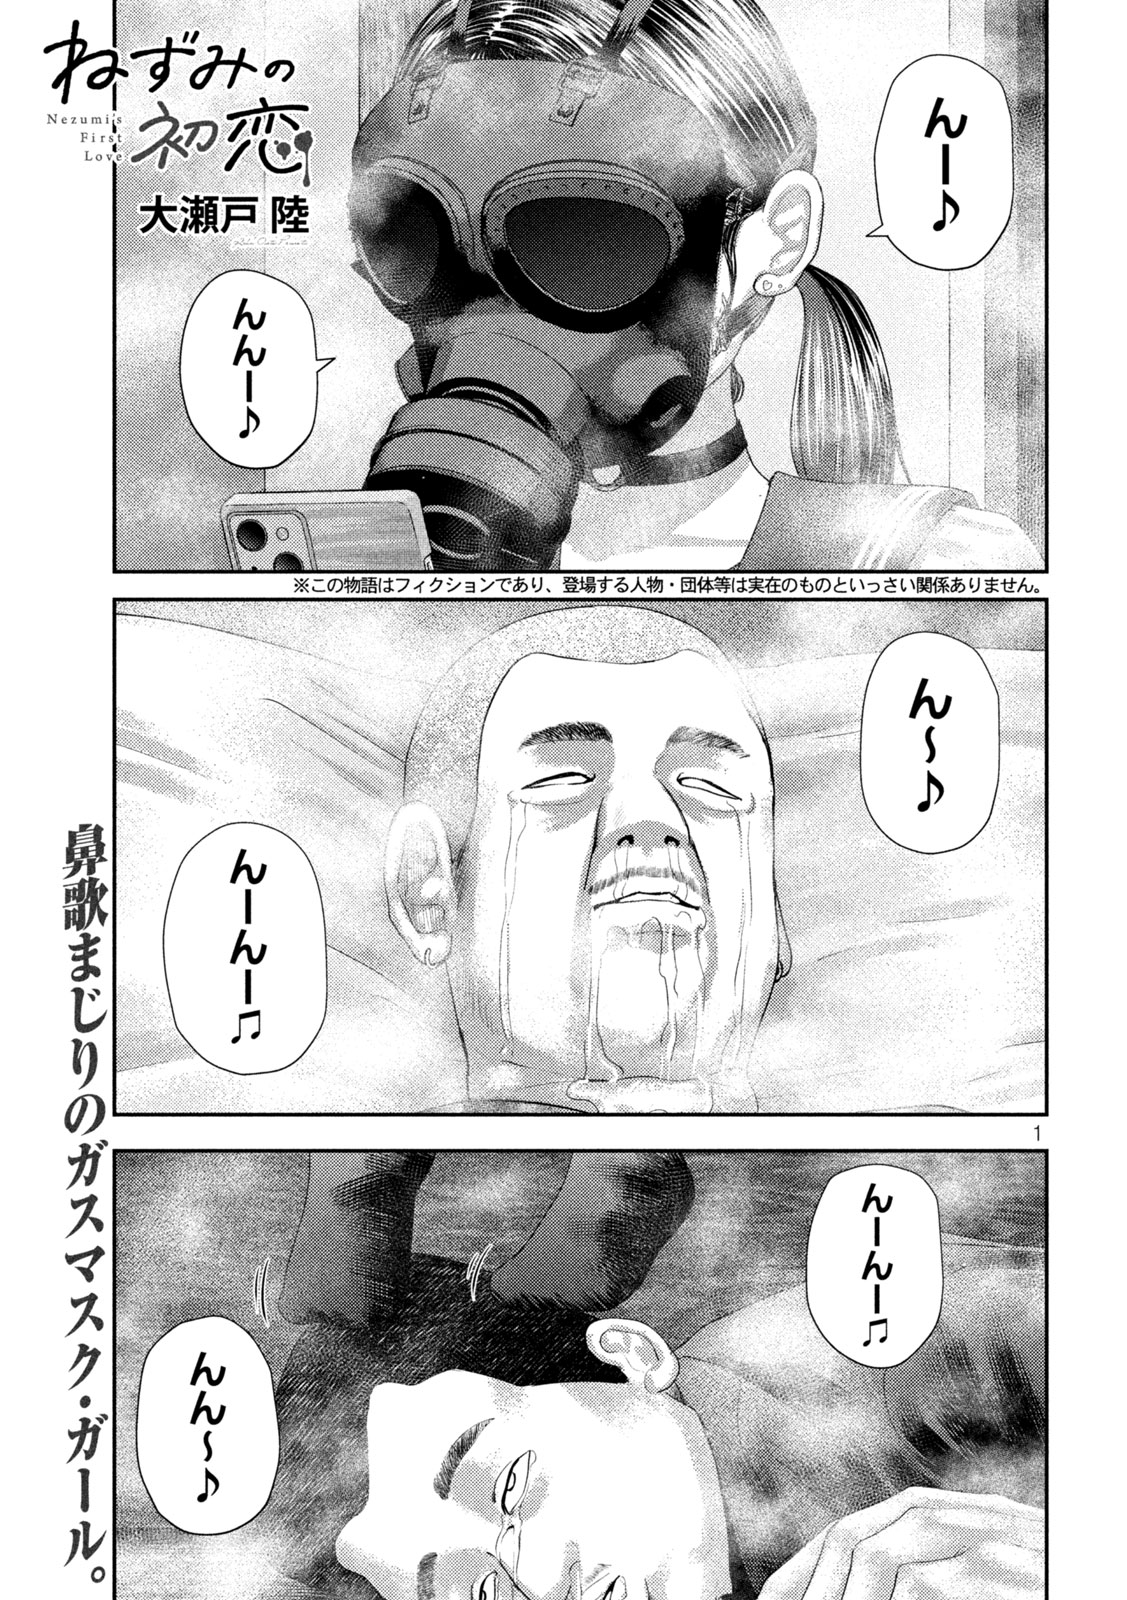 Nezumi no Koi - Chapter 32 - Page 1